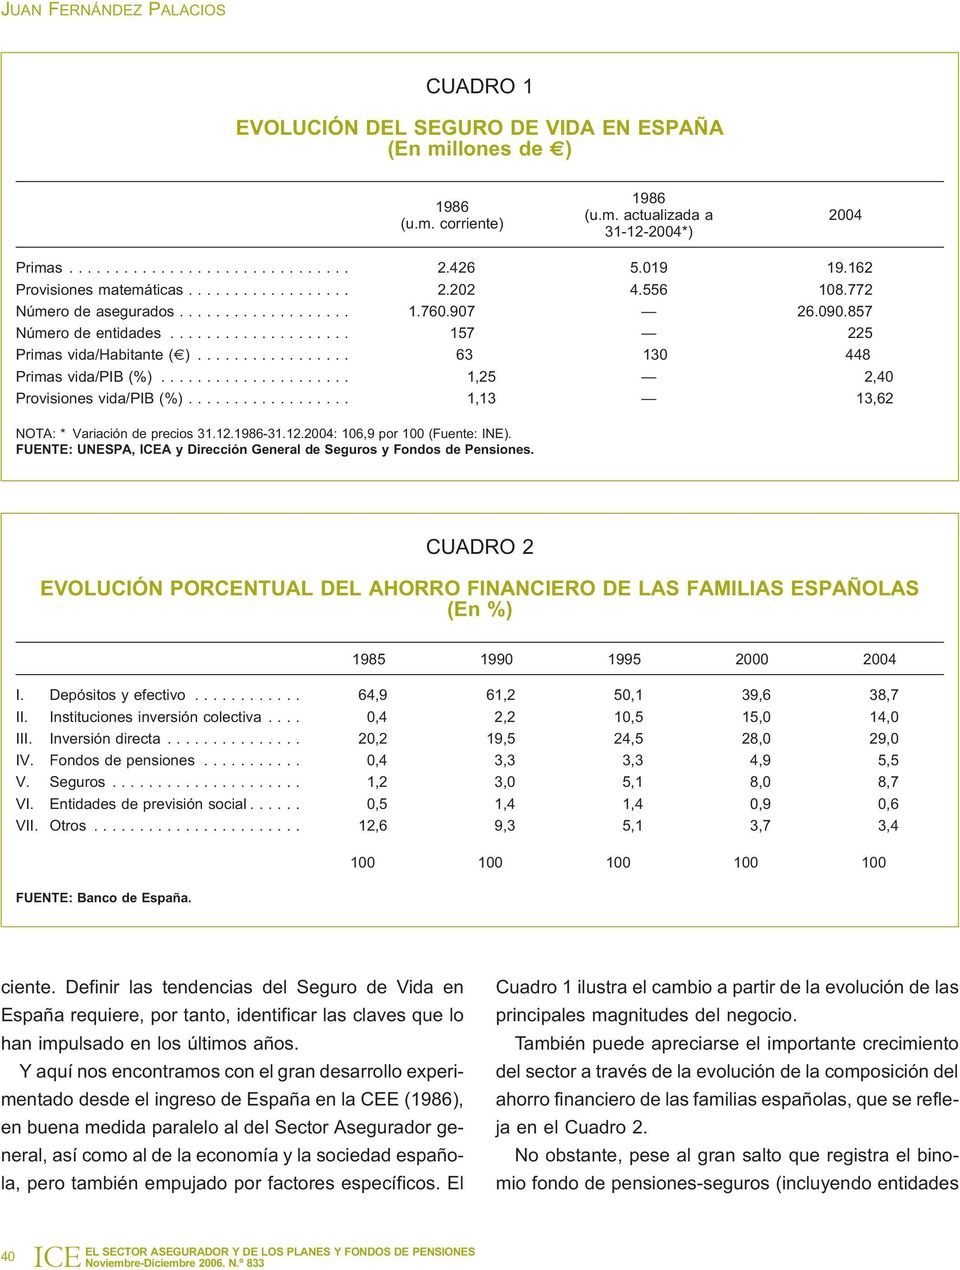 .. 1,25 2,40 Provisiones vida/pib (%)... 1,13 13,62 NOTA: * Variación de precios 31.12.1986-31.12.2004: 106,9 por 100 (Fuente: INE).